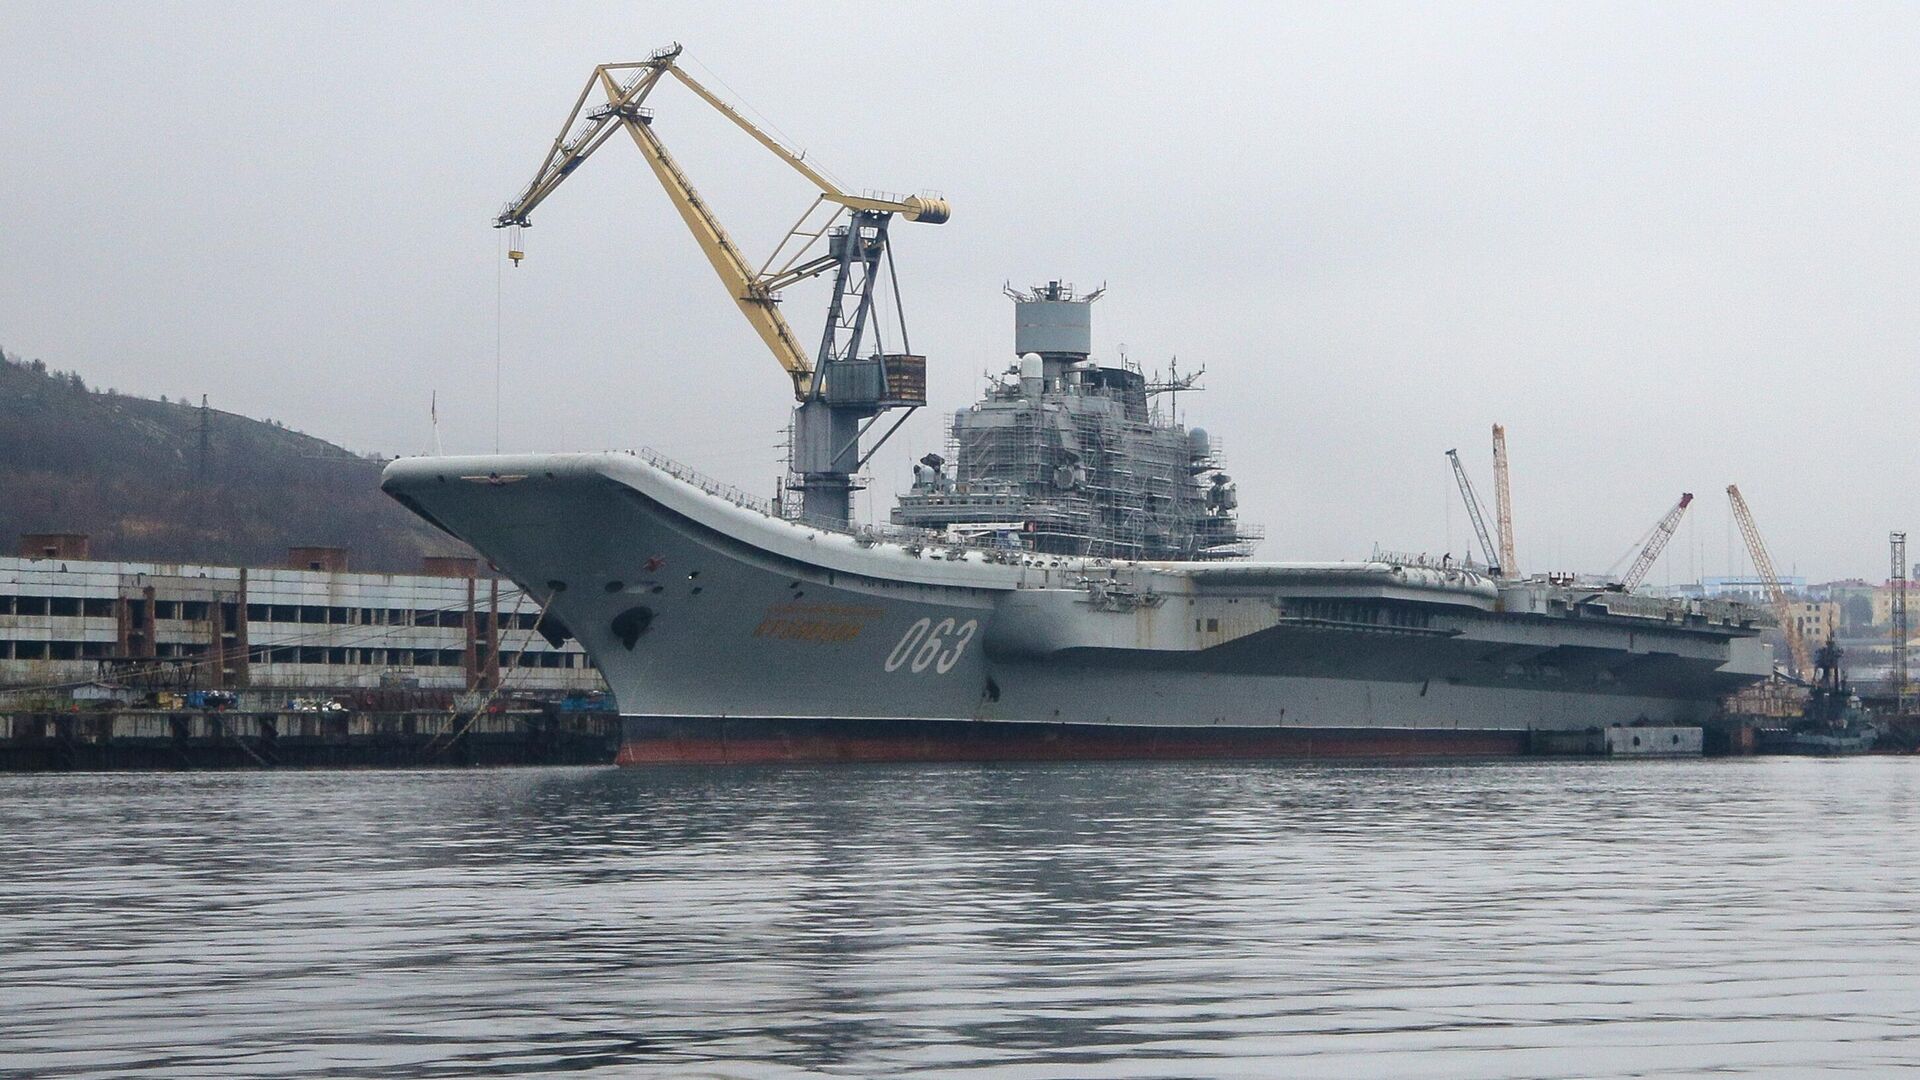 Авианесущий крейсер Адмирал Кузнецов проходит ремонт и модернизацию на 35-м СРЗ в порту Мурманска - РИА Новости, 1920, 27.01.2021